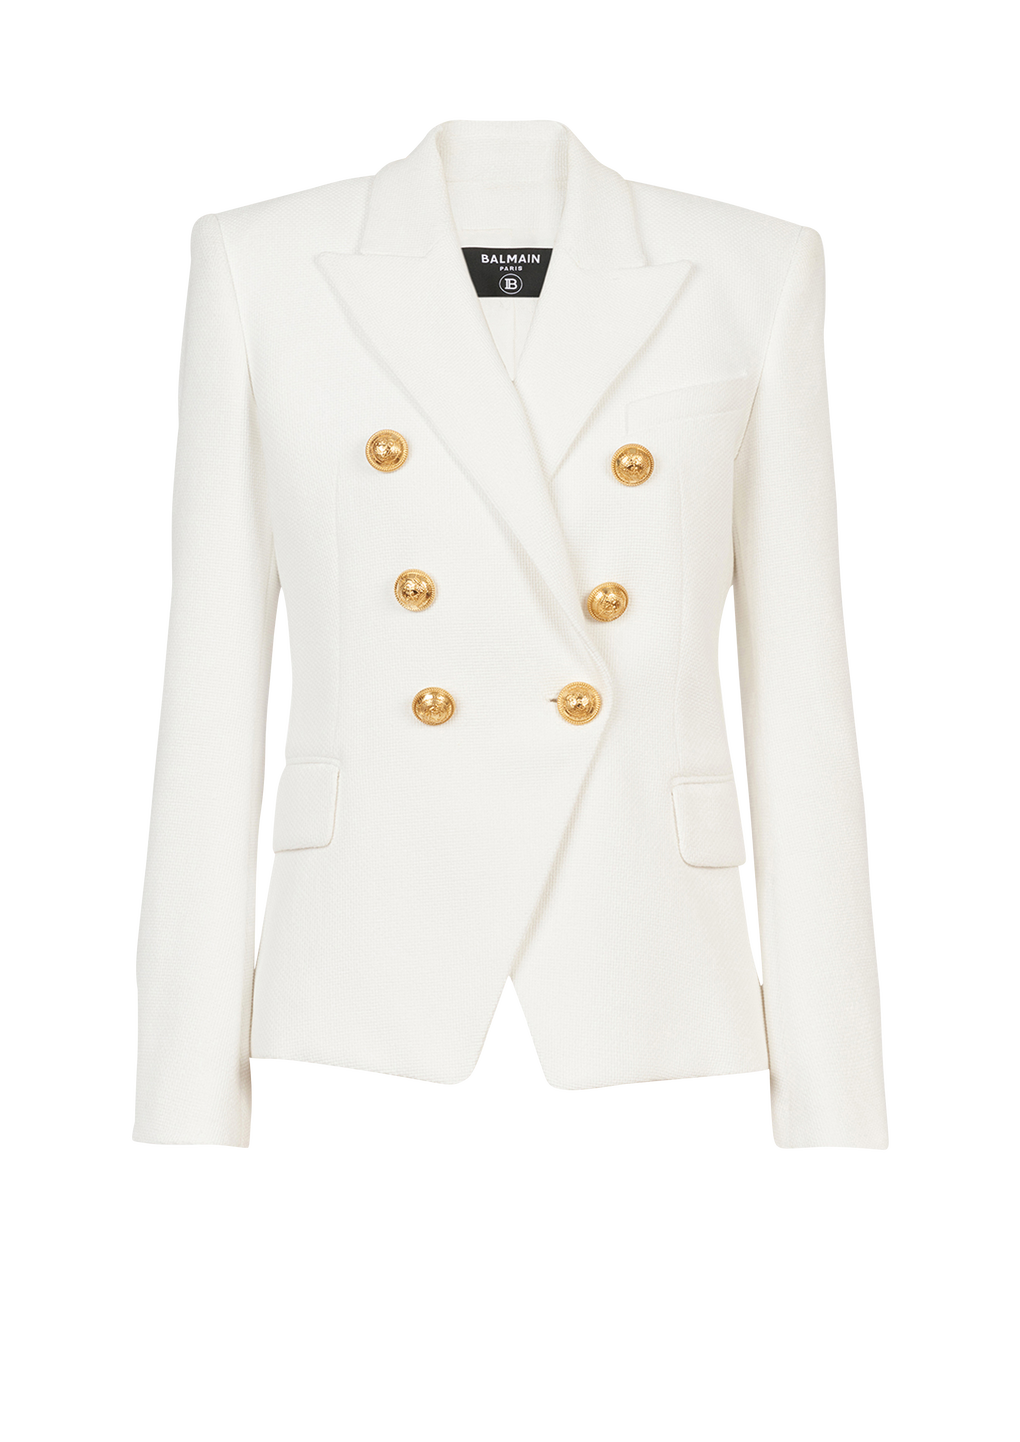 Cotton piqué double-buttoned jacket, white, hi-res